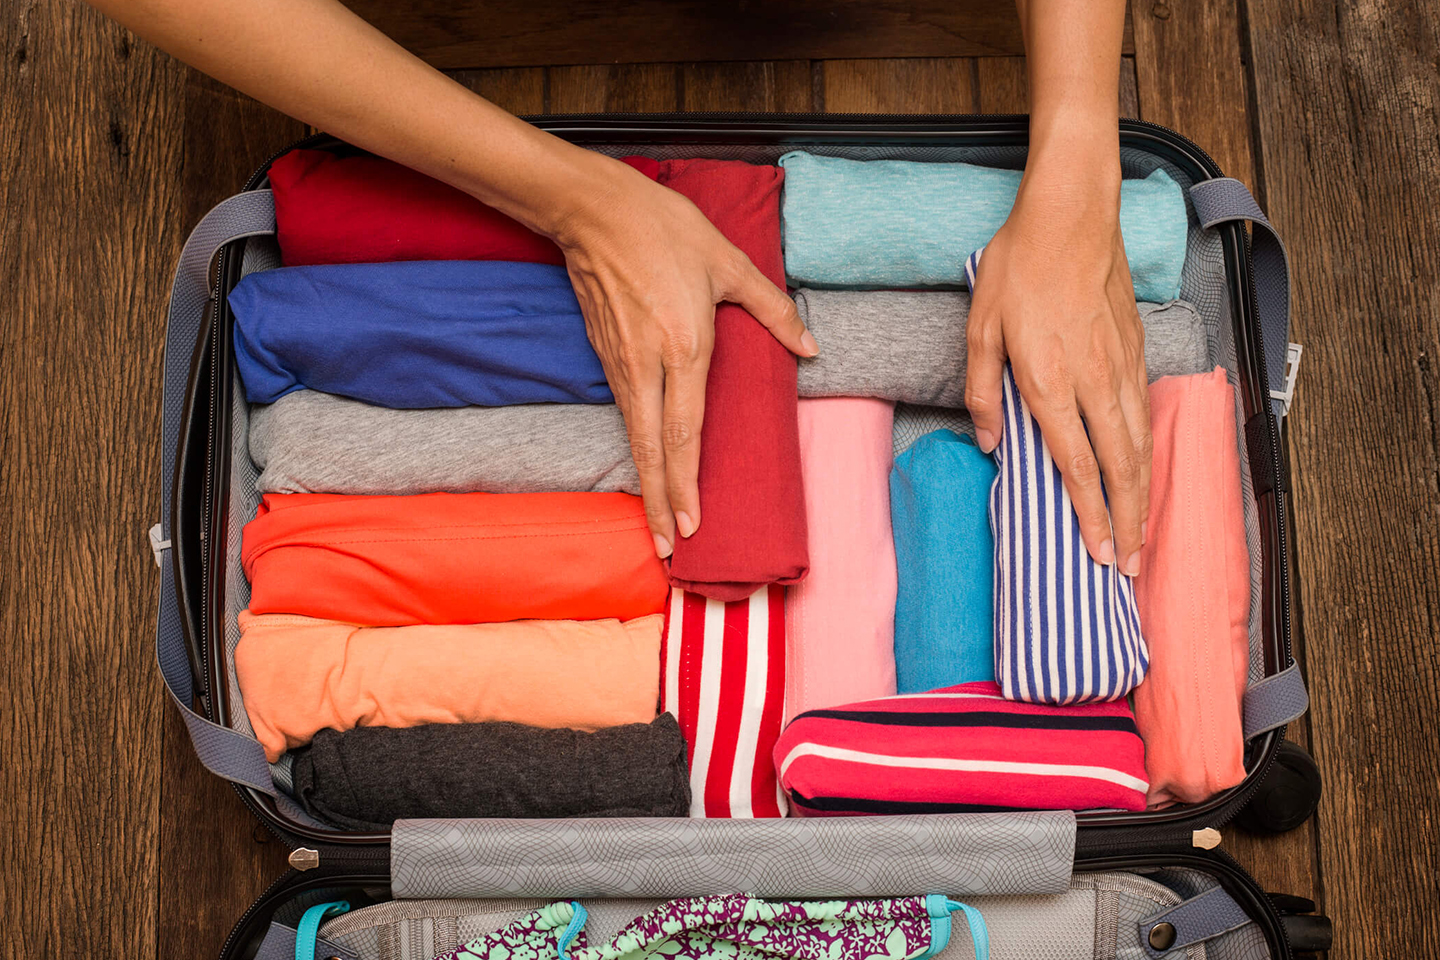 tapa desvanecerse Perversión 21 técninas para empacar y ahorrar espacio en tu maleta - Tips Para Tu Viaje